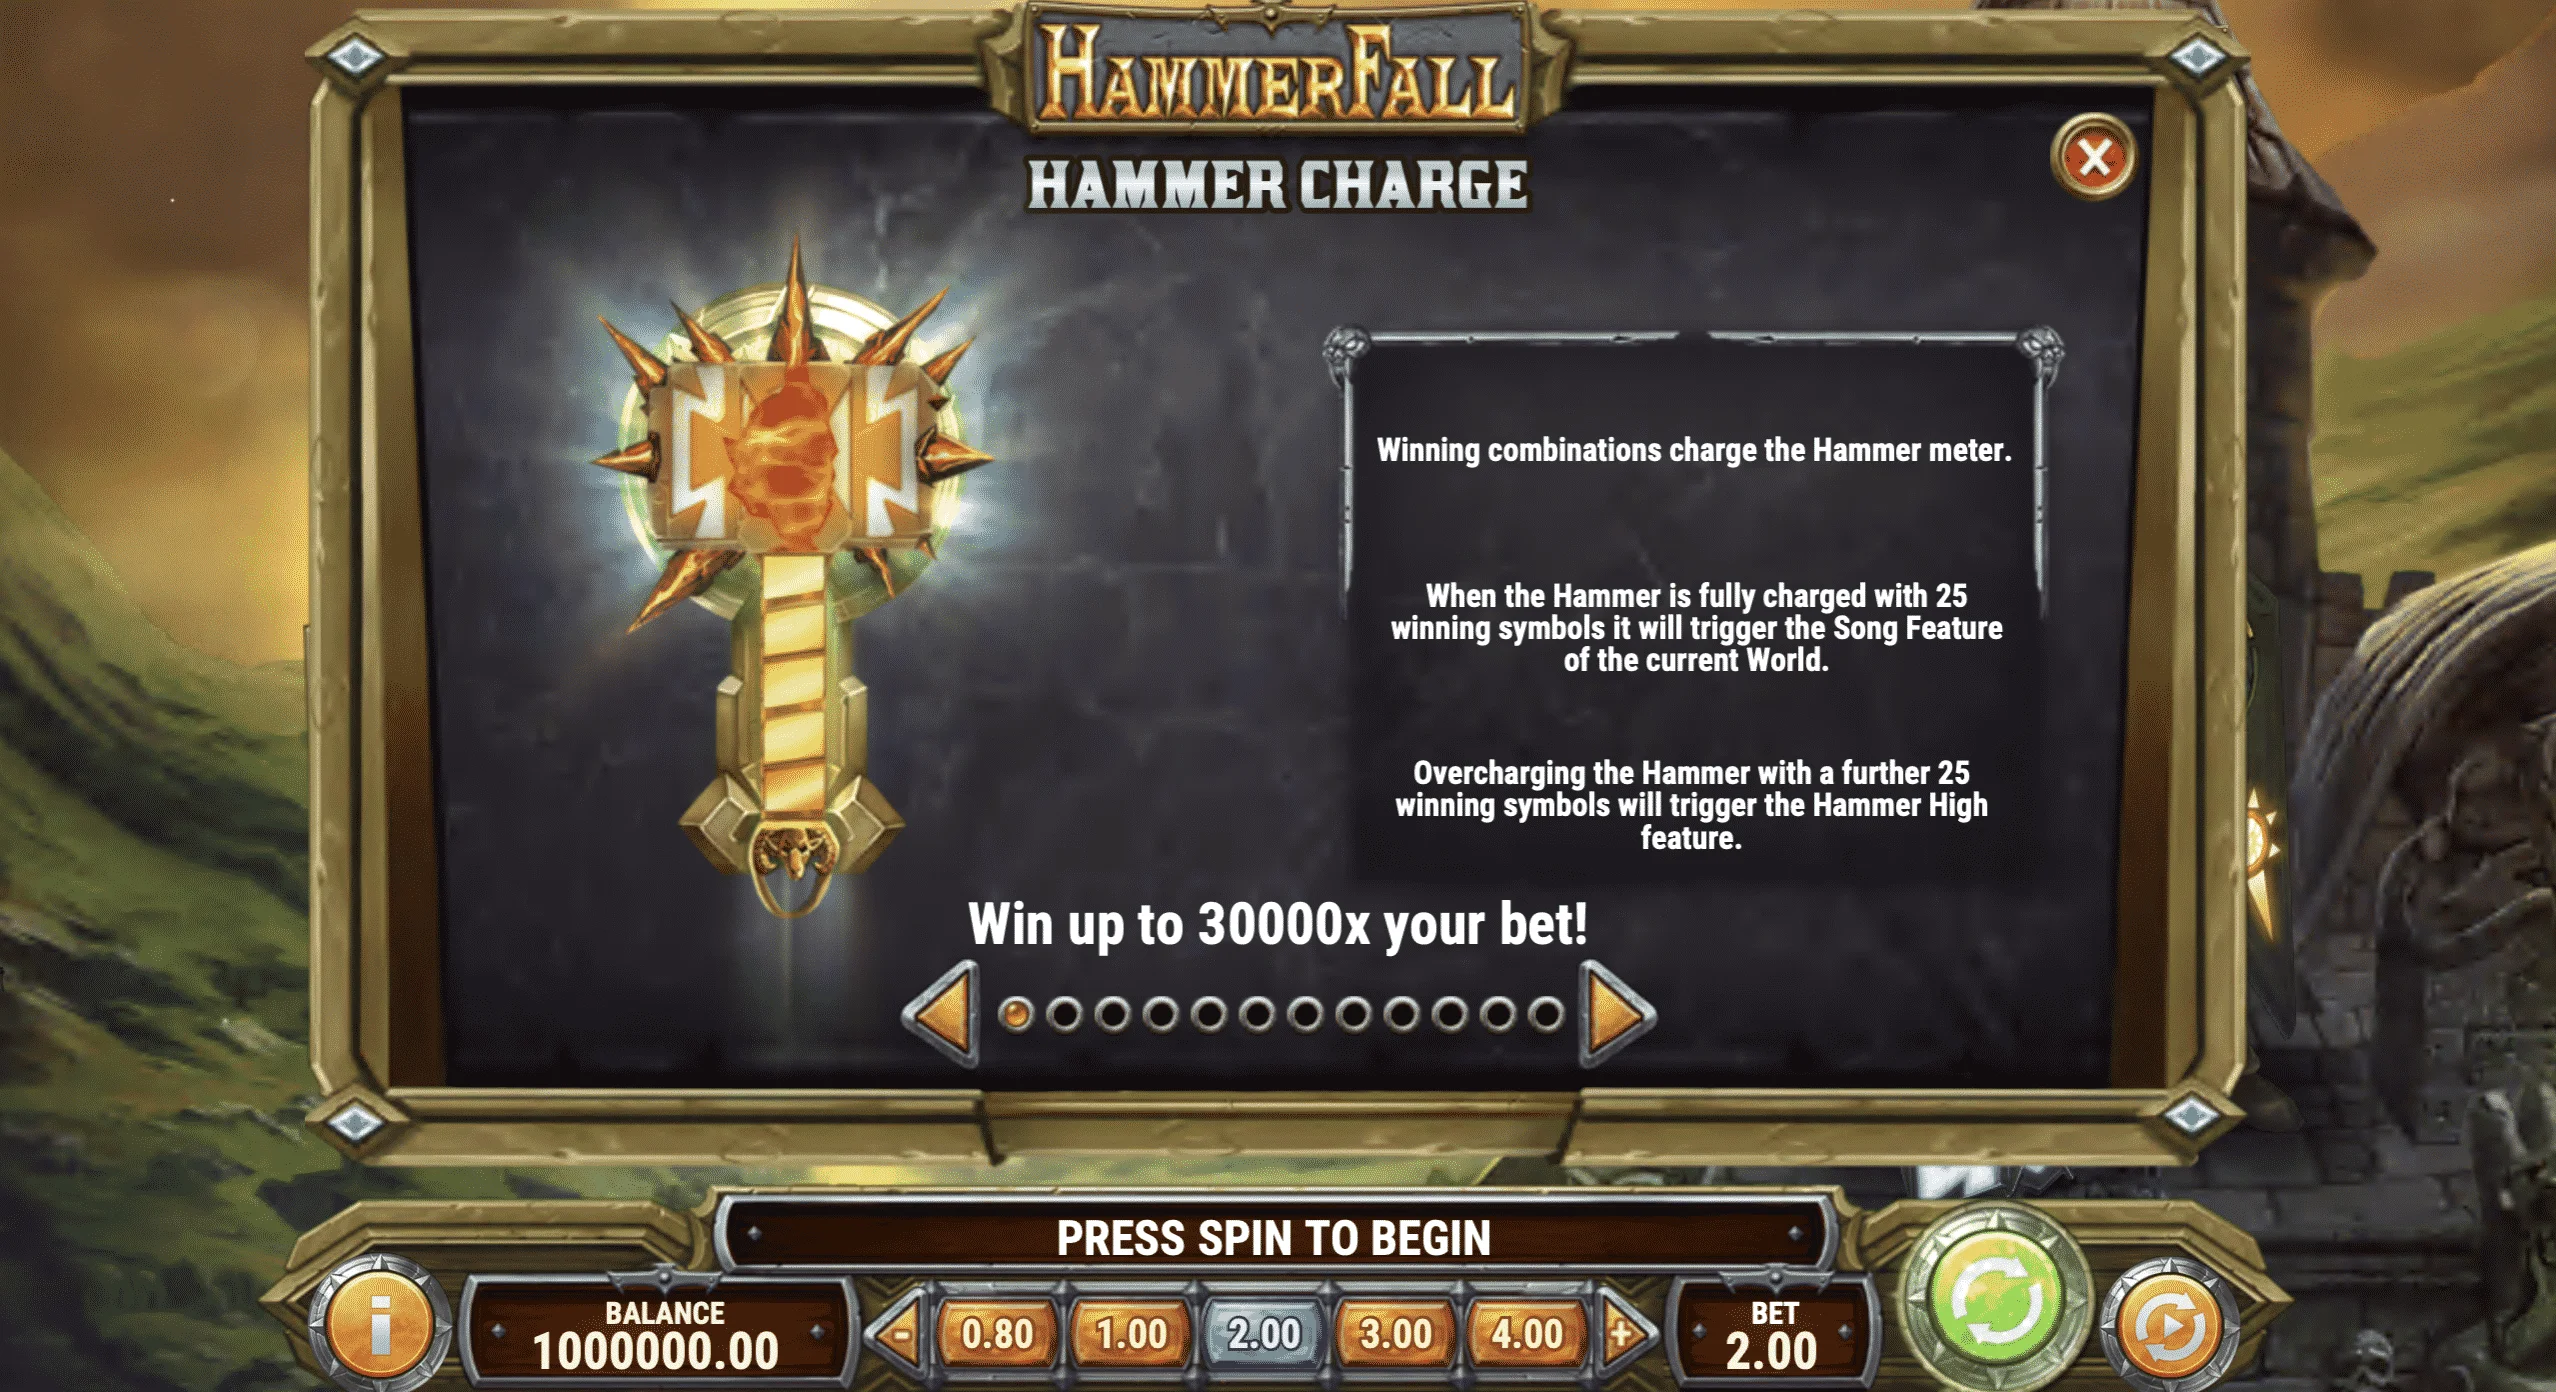 HammerFall Hammer Charge